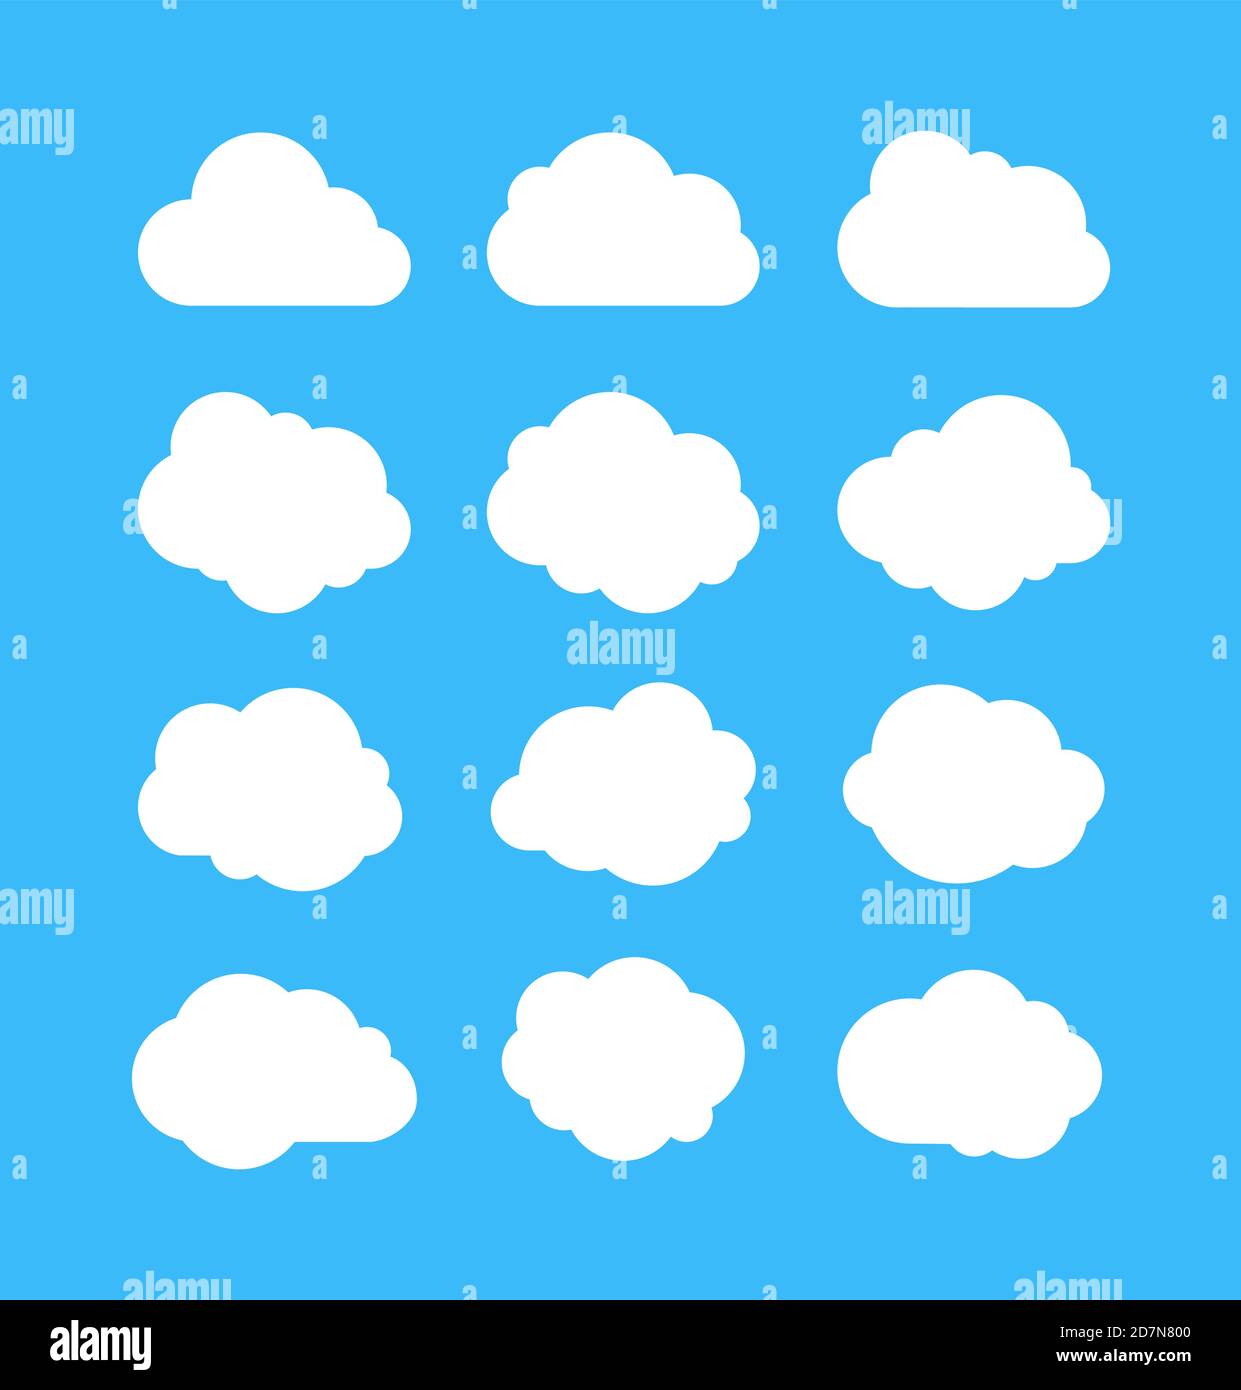 Weiße einfache Wolken. Denken Blasen, Wolke Nachricht Formen. Cumulus isoliert auf blauem Hintergrund. Cartoon Vektor-Set von weißen Cumulus Wolken für Message Thinking Illustration Stock Vektor